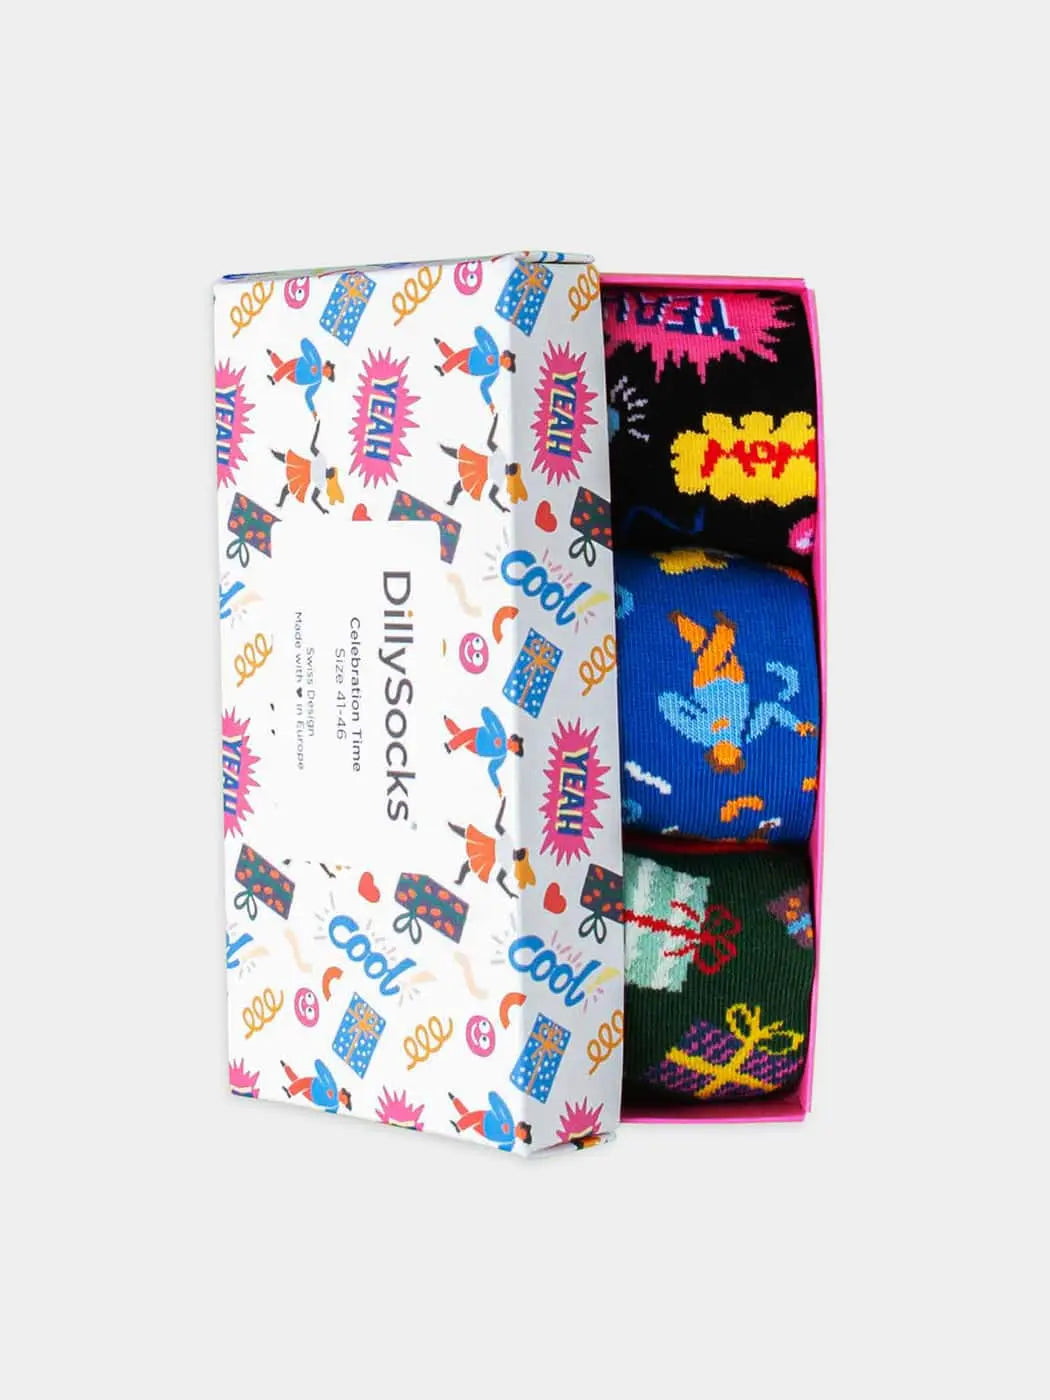 - Socken-Geschenkbox in Blau Schwarz Grün mit Party Motiv/Muster von DillySocks